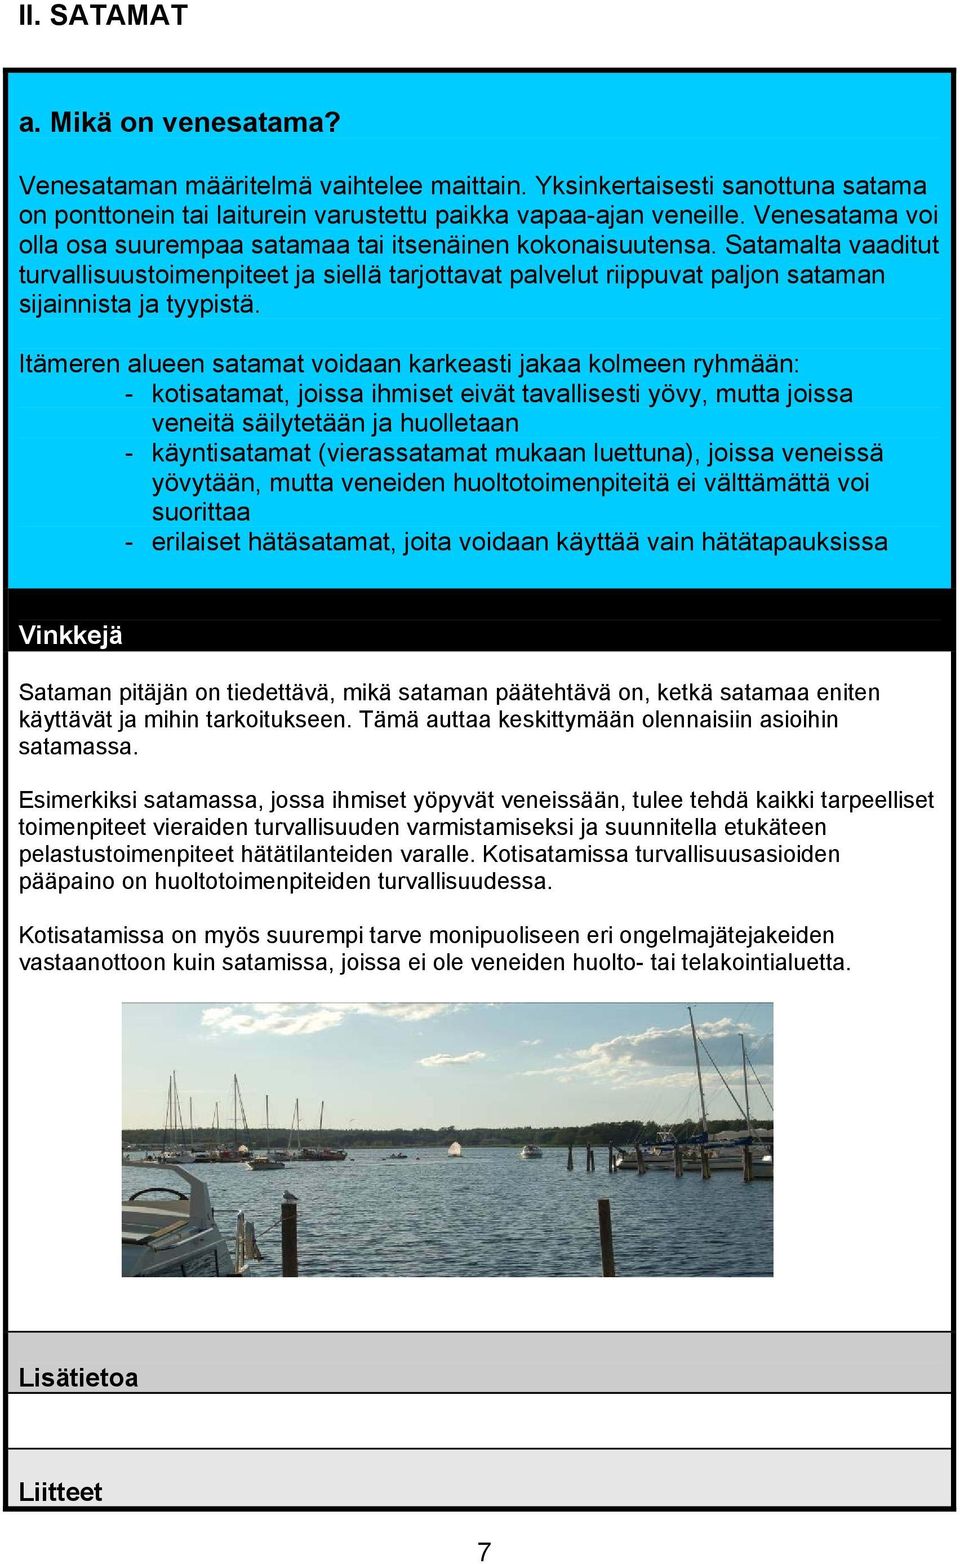 Itämeren alueen satamat voidaan karkeasti jakaa kolmeen ryhmään: - kotisatamat, joissa ihmiset eivät tavallisesti yövy, mutta joissa veneitä säilytetään ja huolletaan - käyntisatamat (vierassatamat